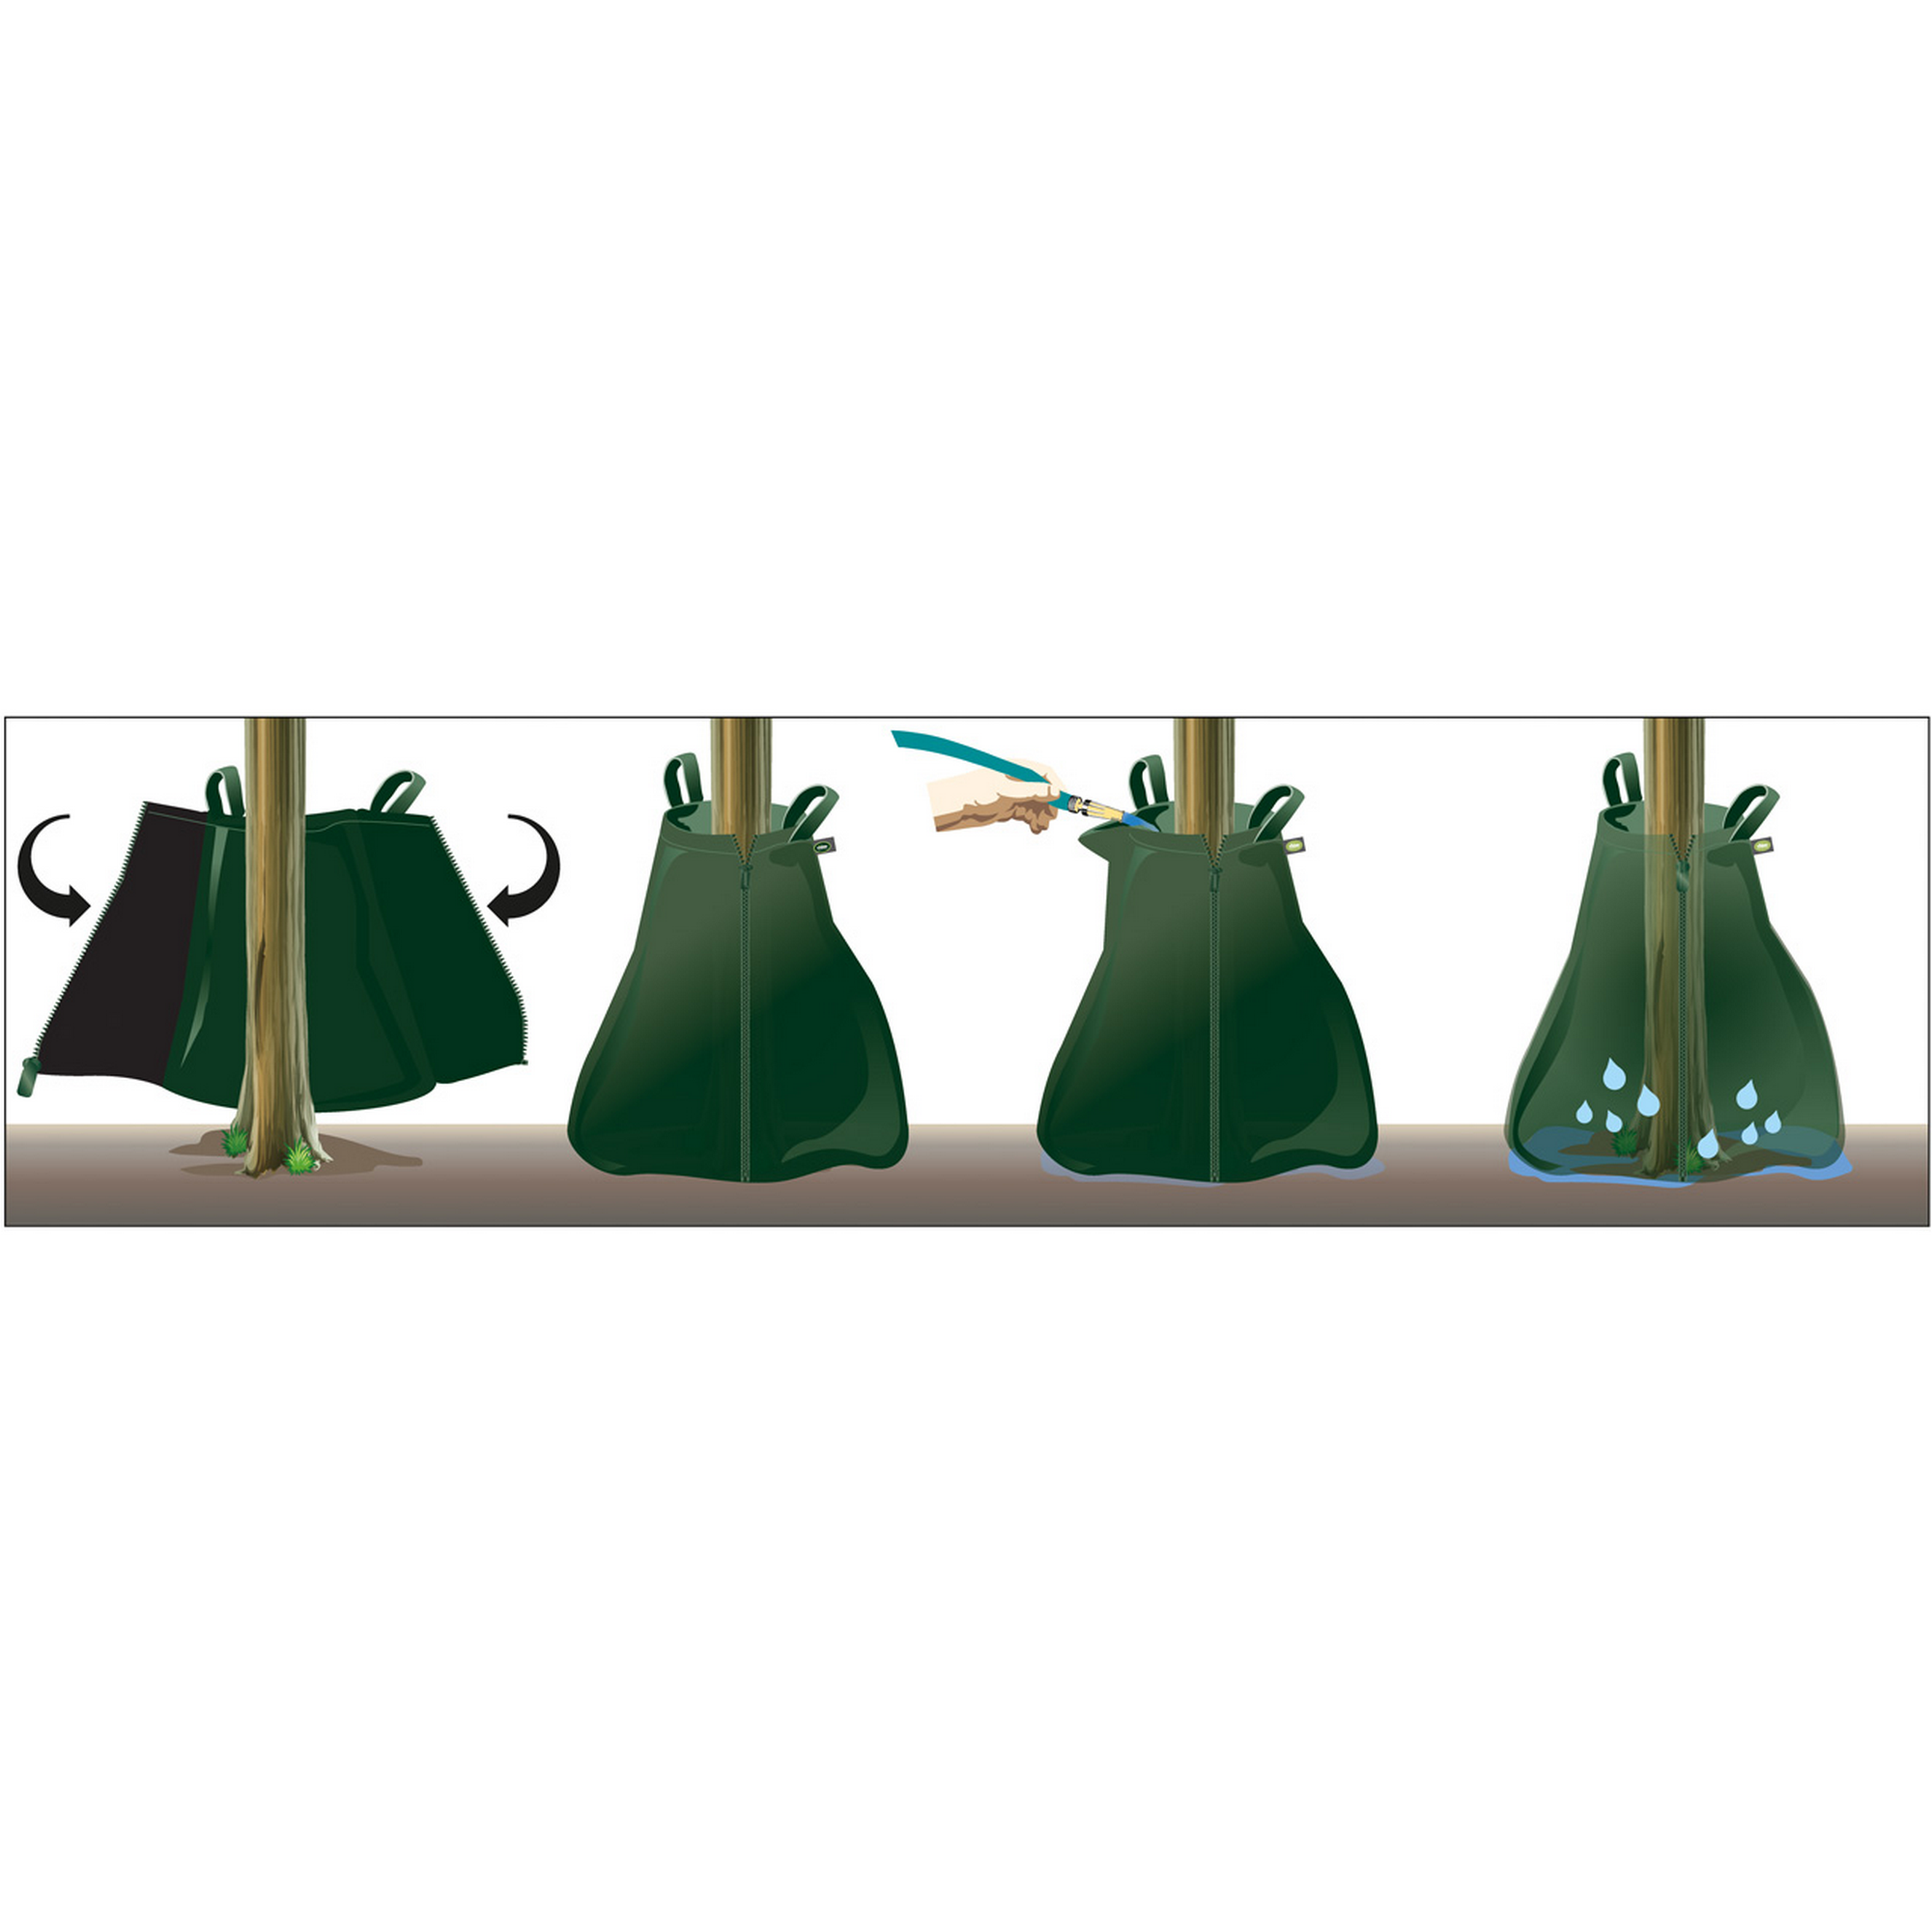 Bewässerungs-Sack 'Rainbag' Kunststoff 75 l + product picture